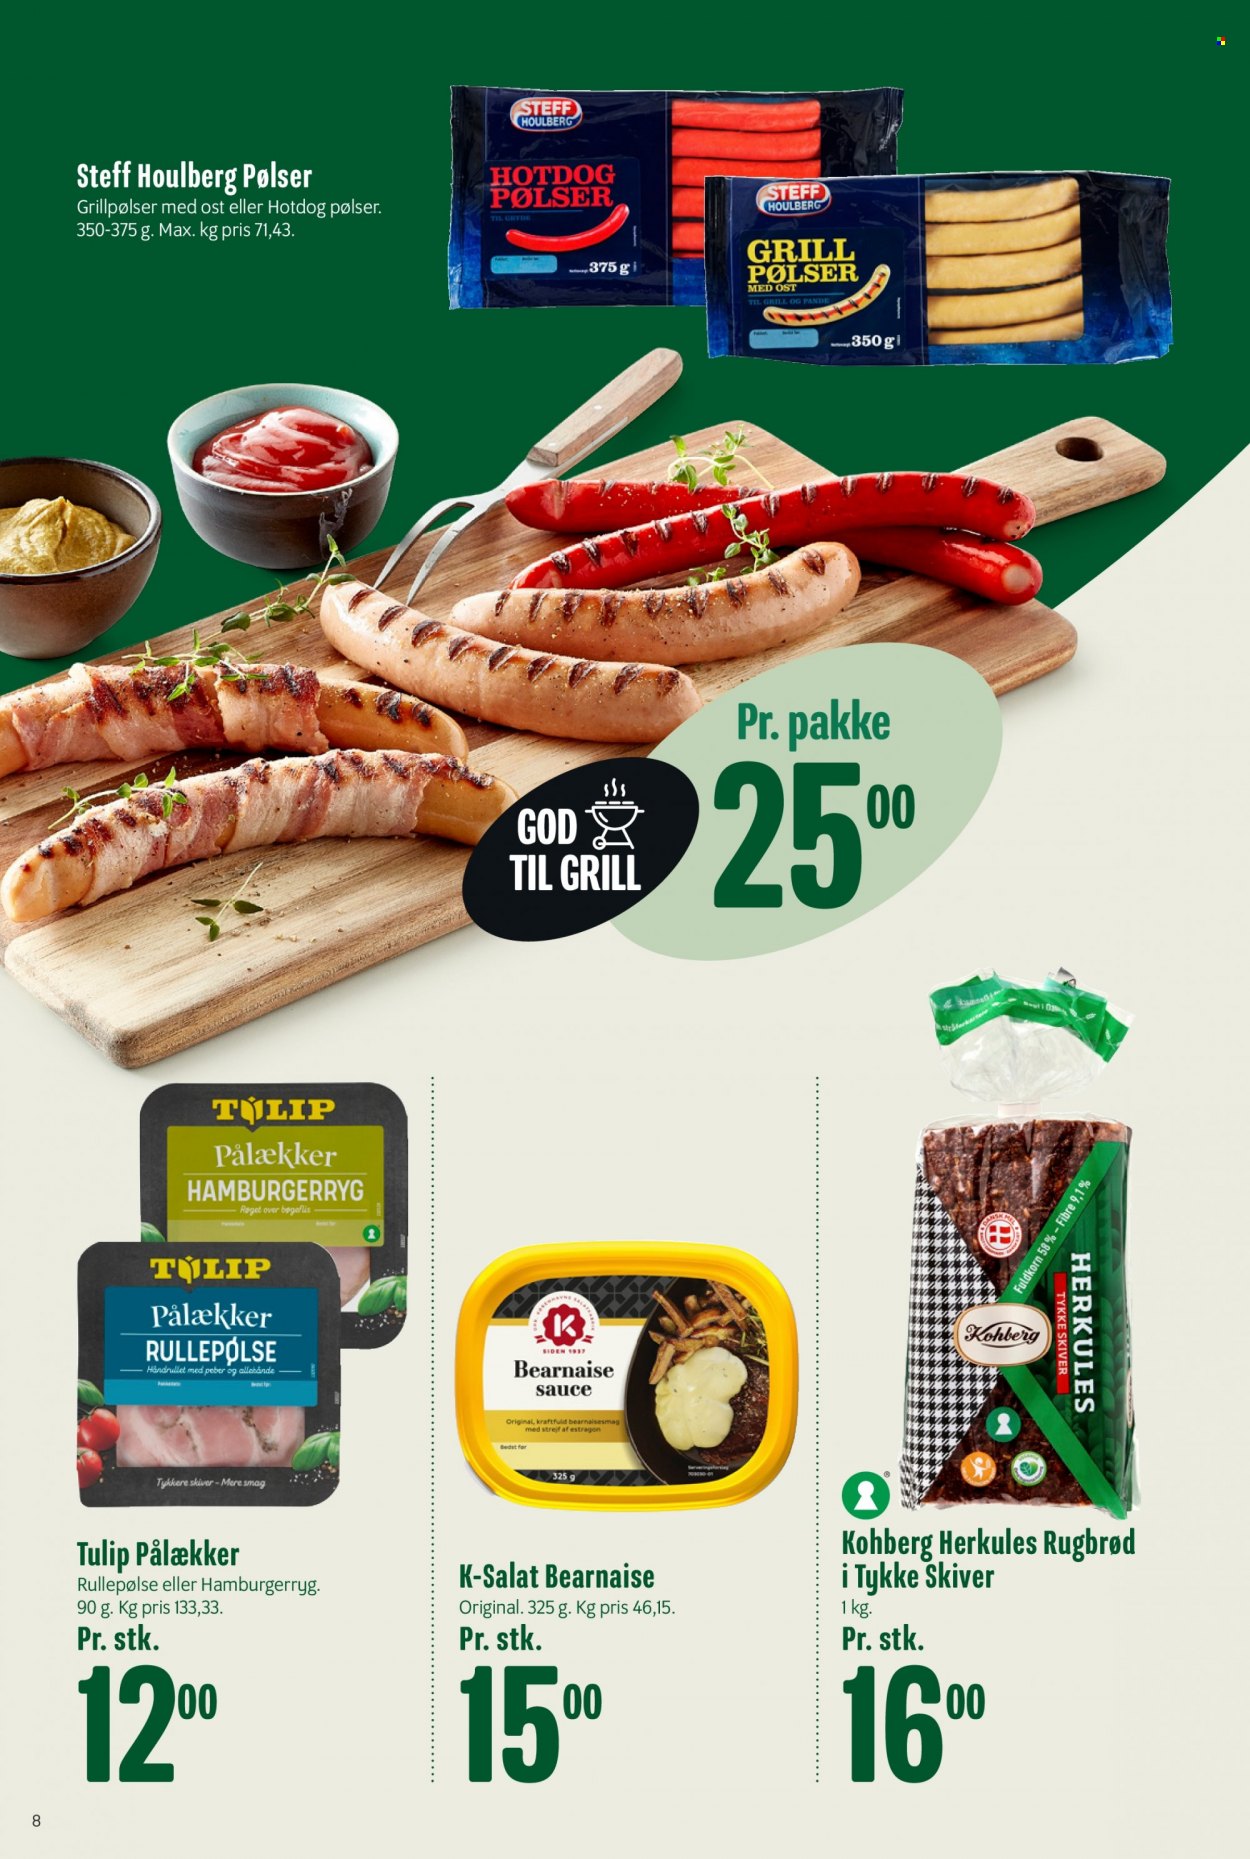 thumbnail - Min Købmand tilbud  - 2.7.2022 - 8.7.2022 - tilbudsprodukter - hamburgerryg, rugbrød, brød, hot dog, Steff Houlberg, grillpølser, hotdog pølser, pølser, sauce, bearnaise sauce. Side 8.